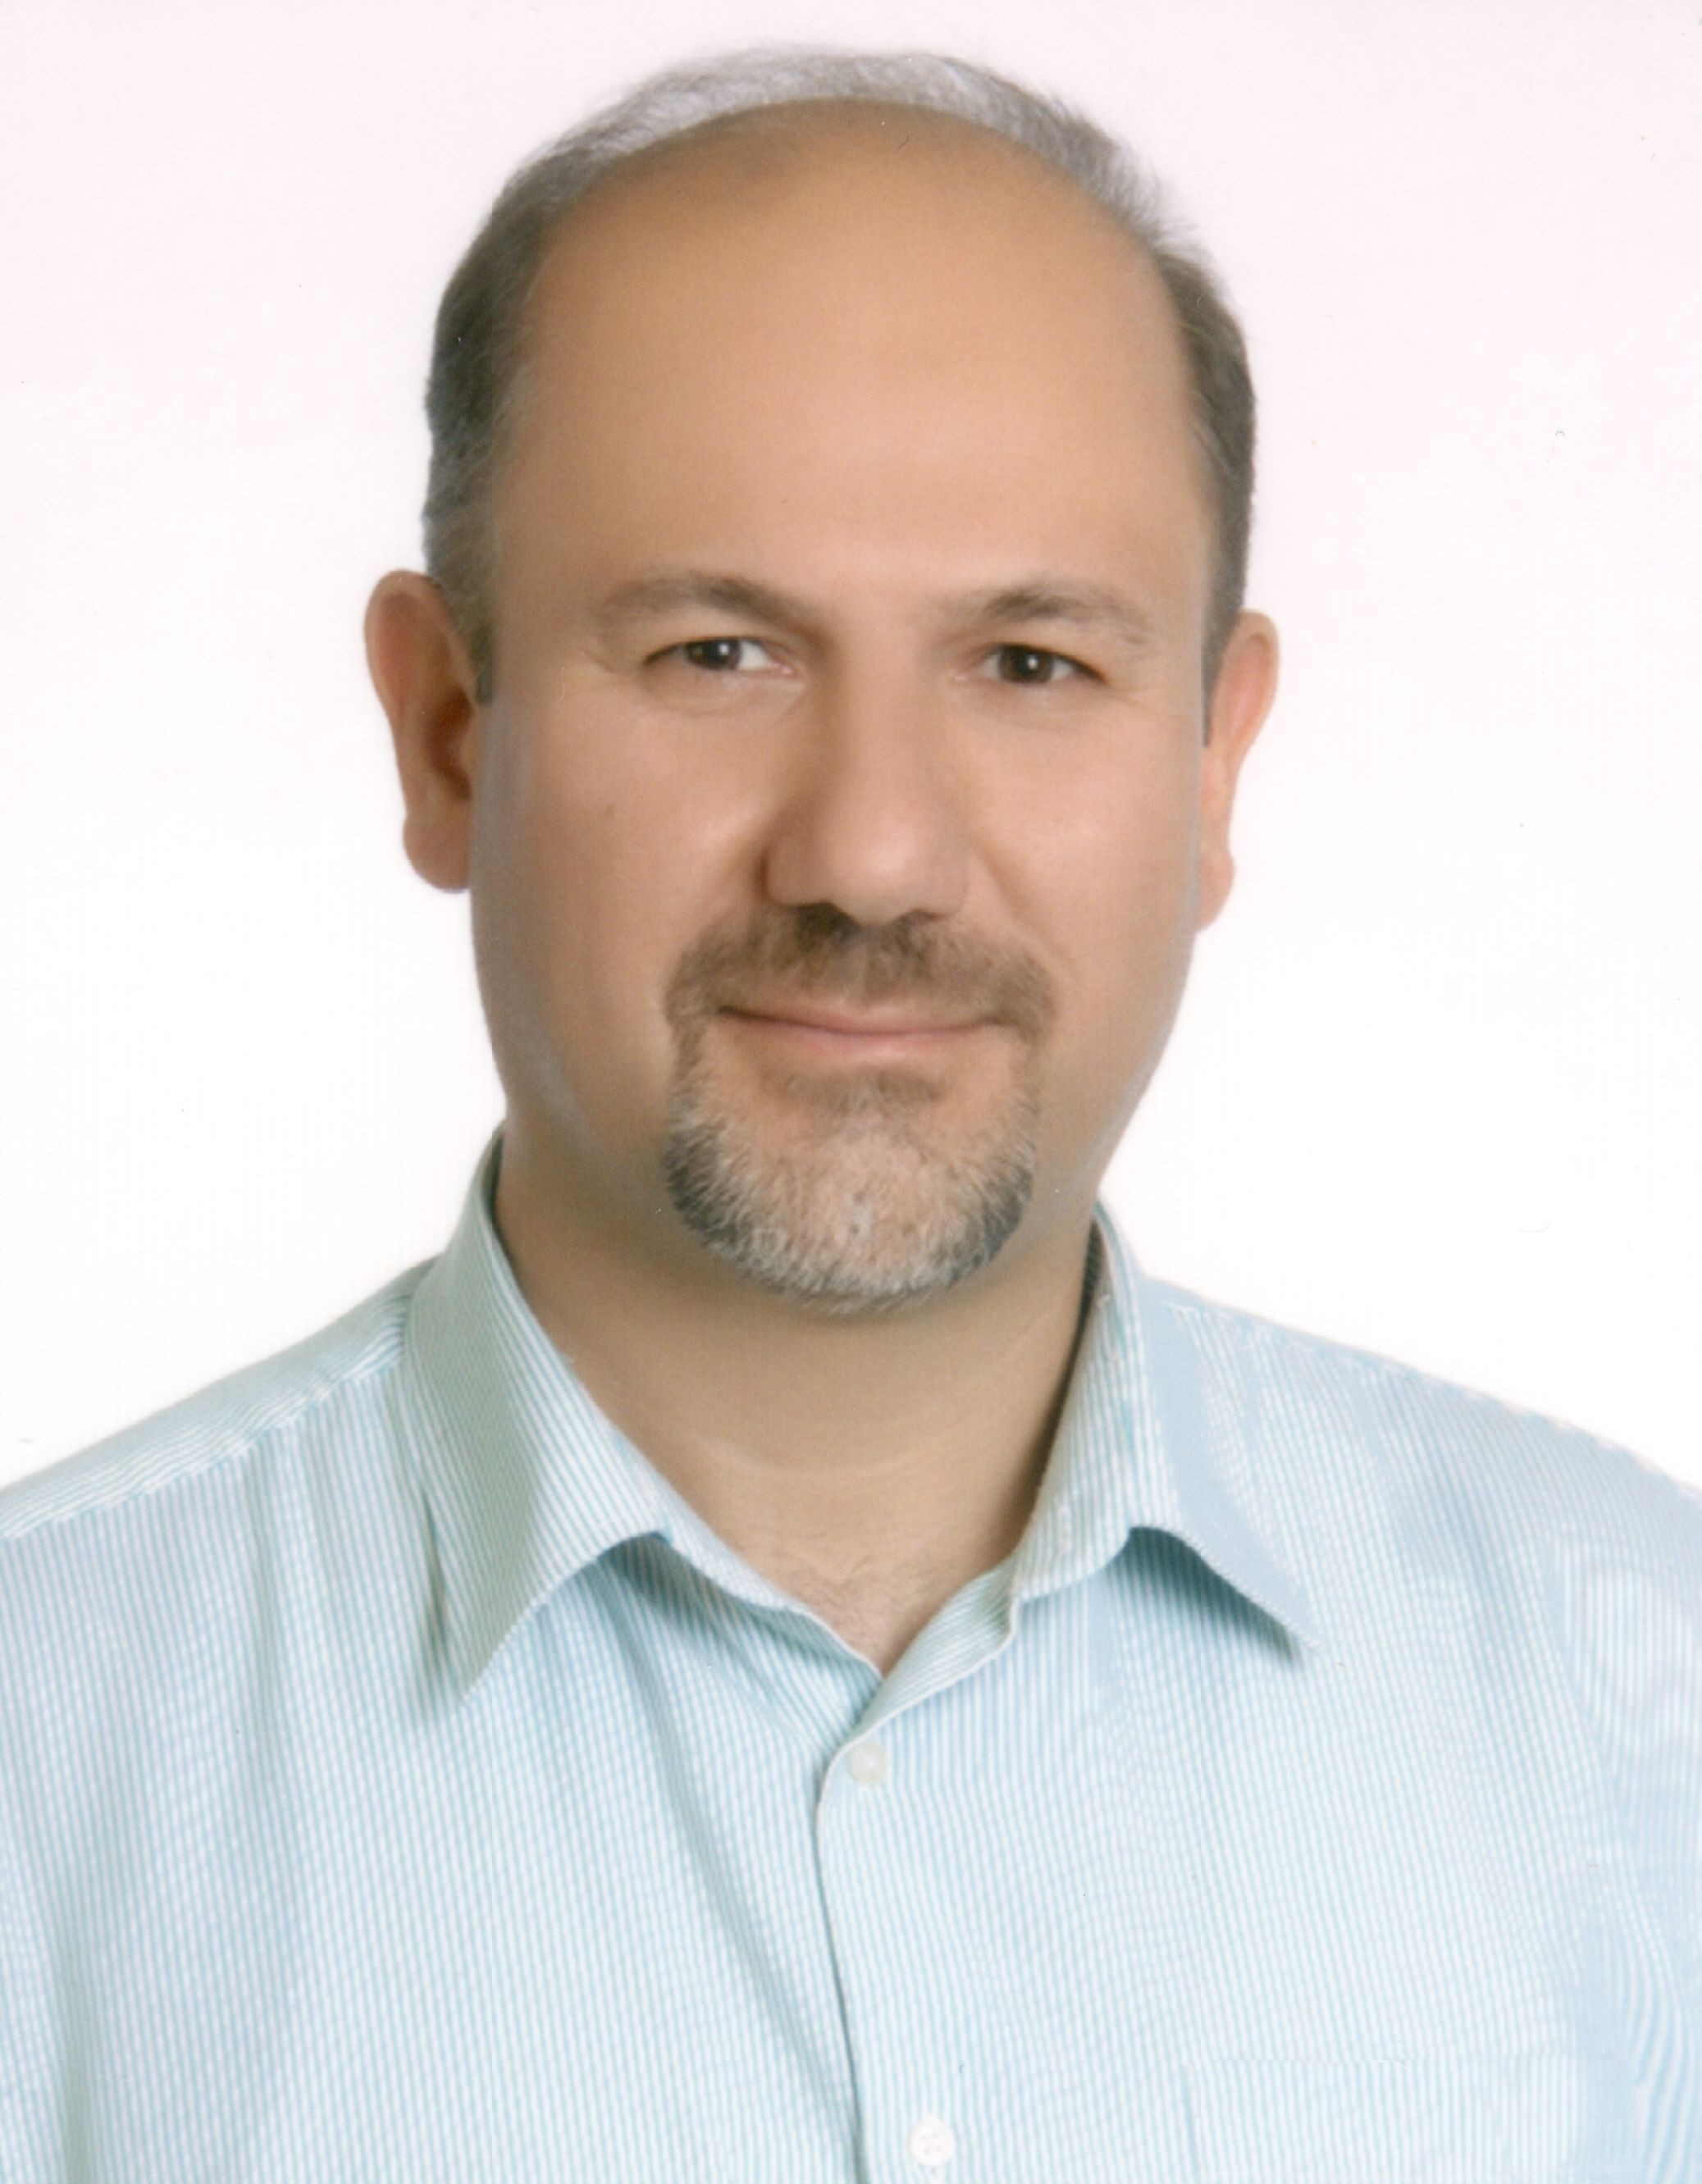 Amin Setarehdan, MD, PhD